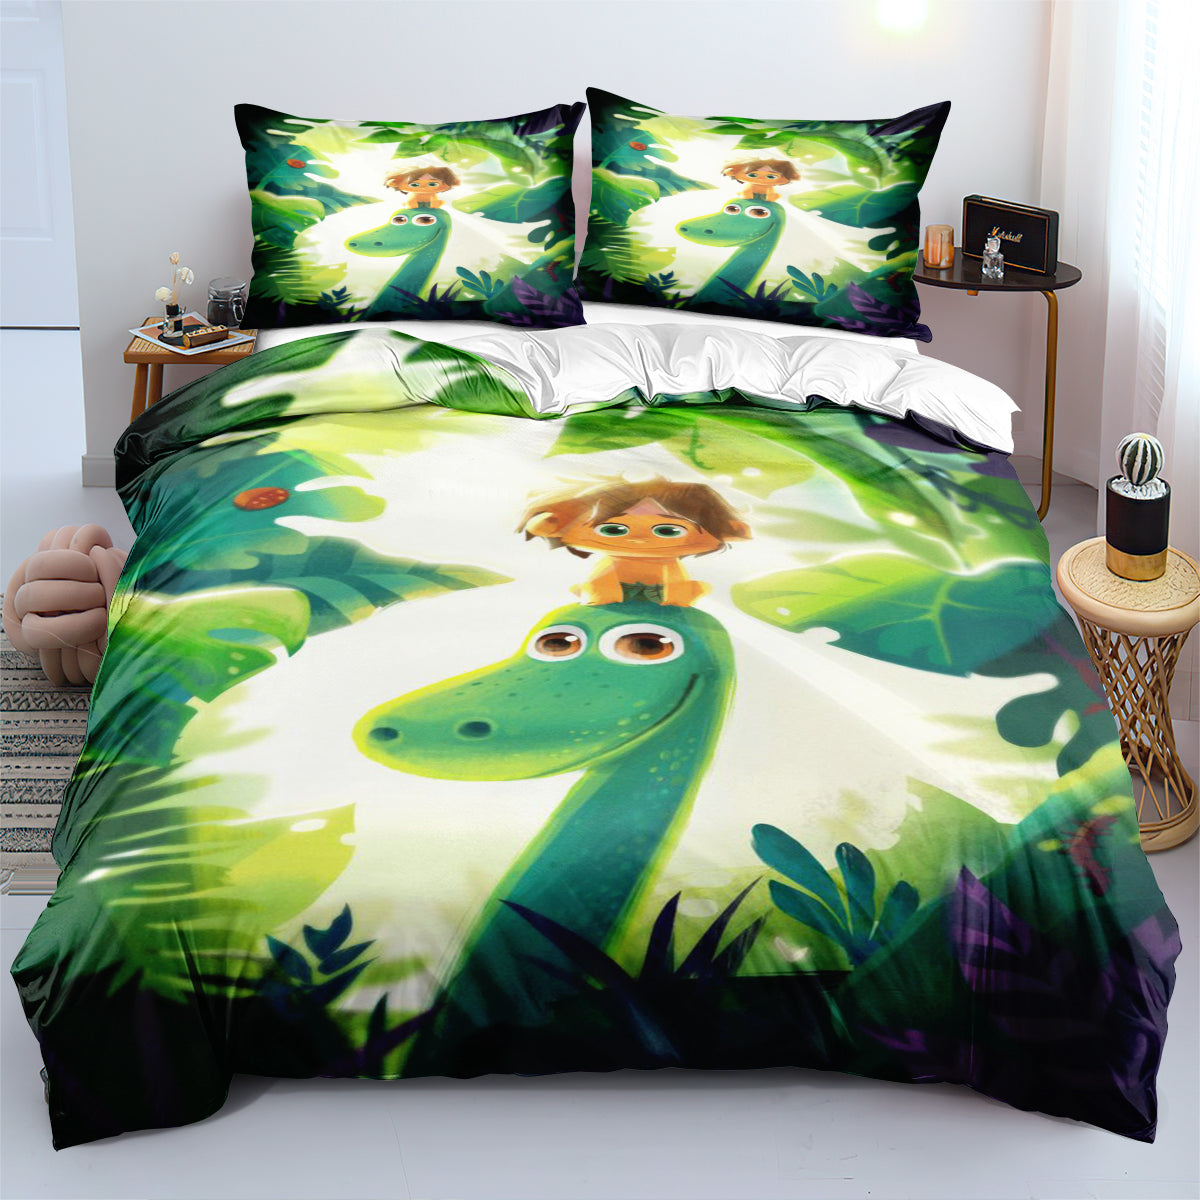 The Good Dinosaur Duvet Cover Quilt Cover Pillowcase Bedding Set